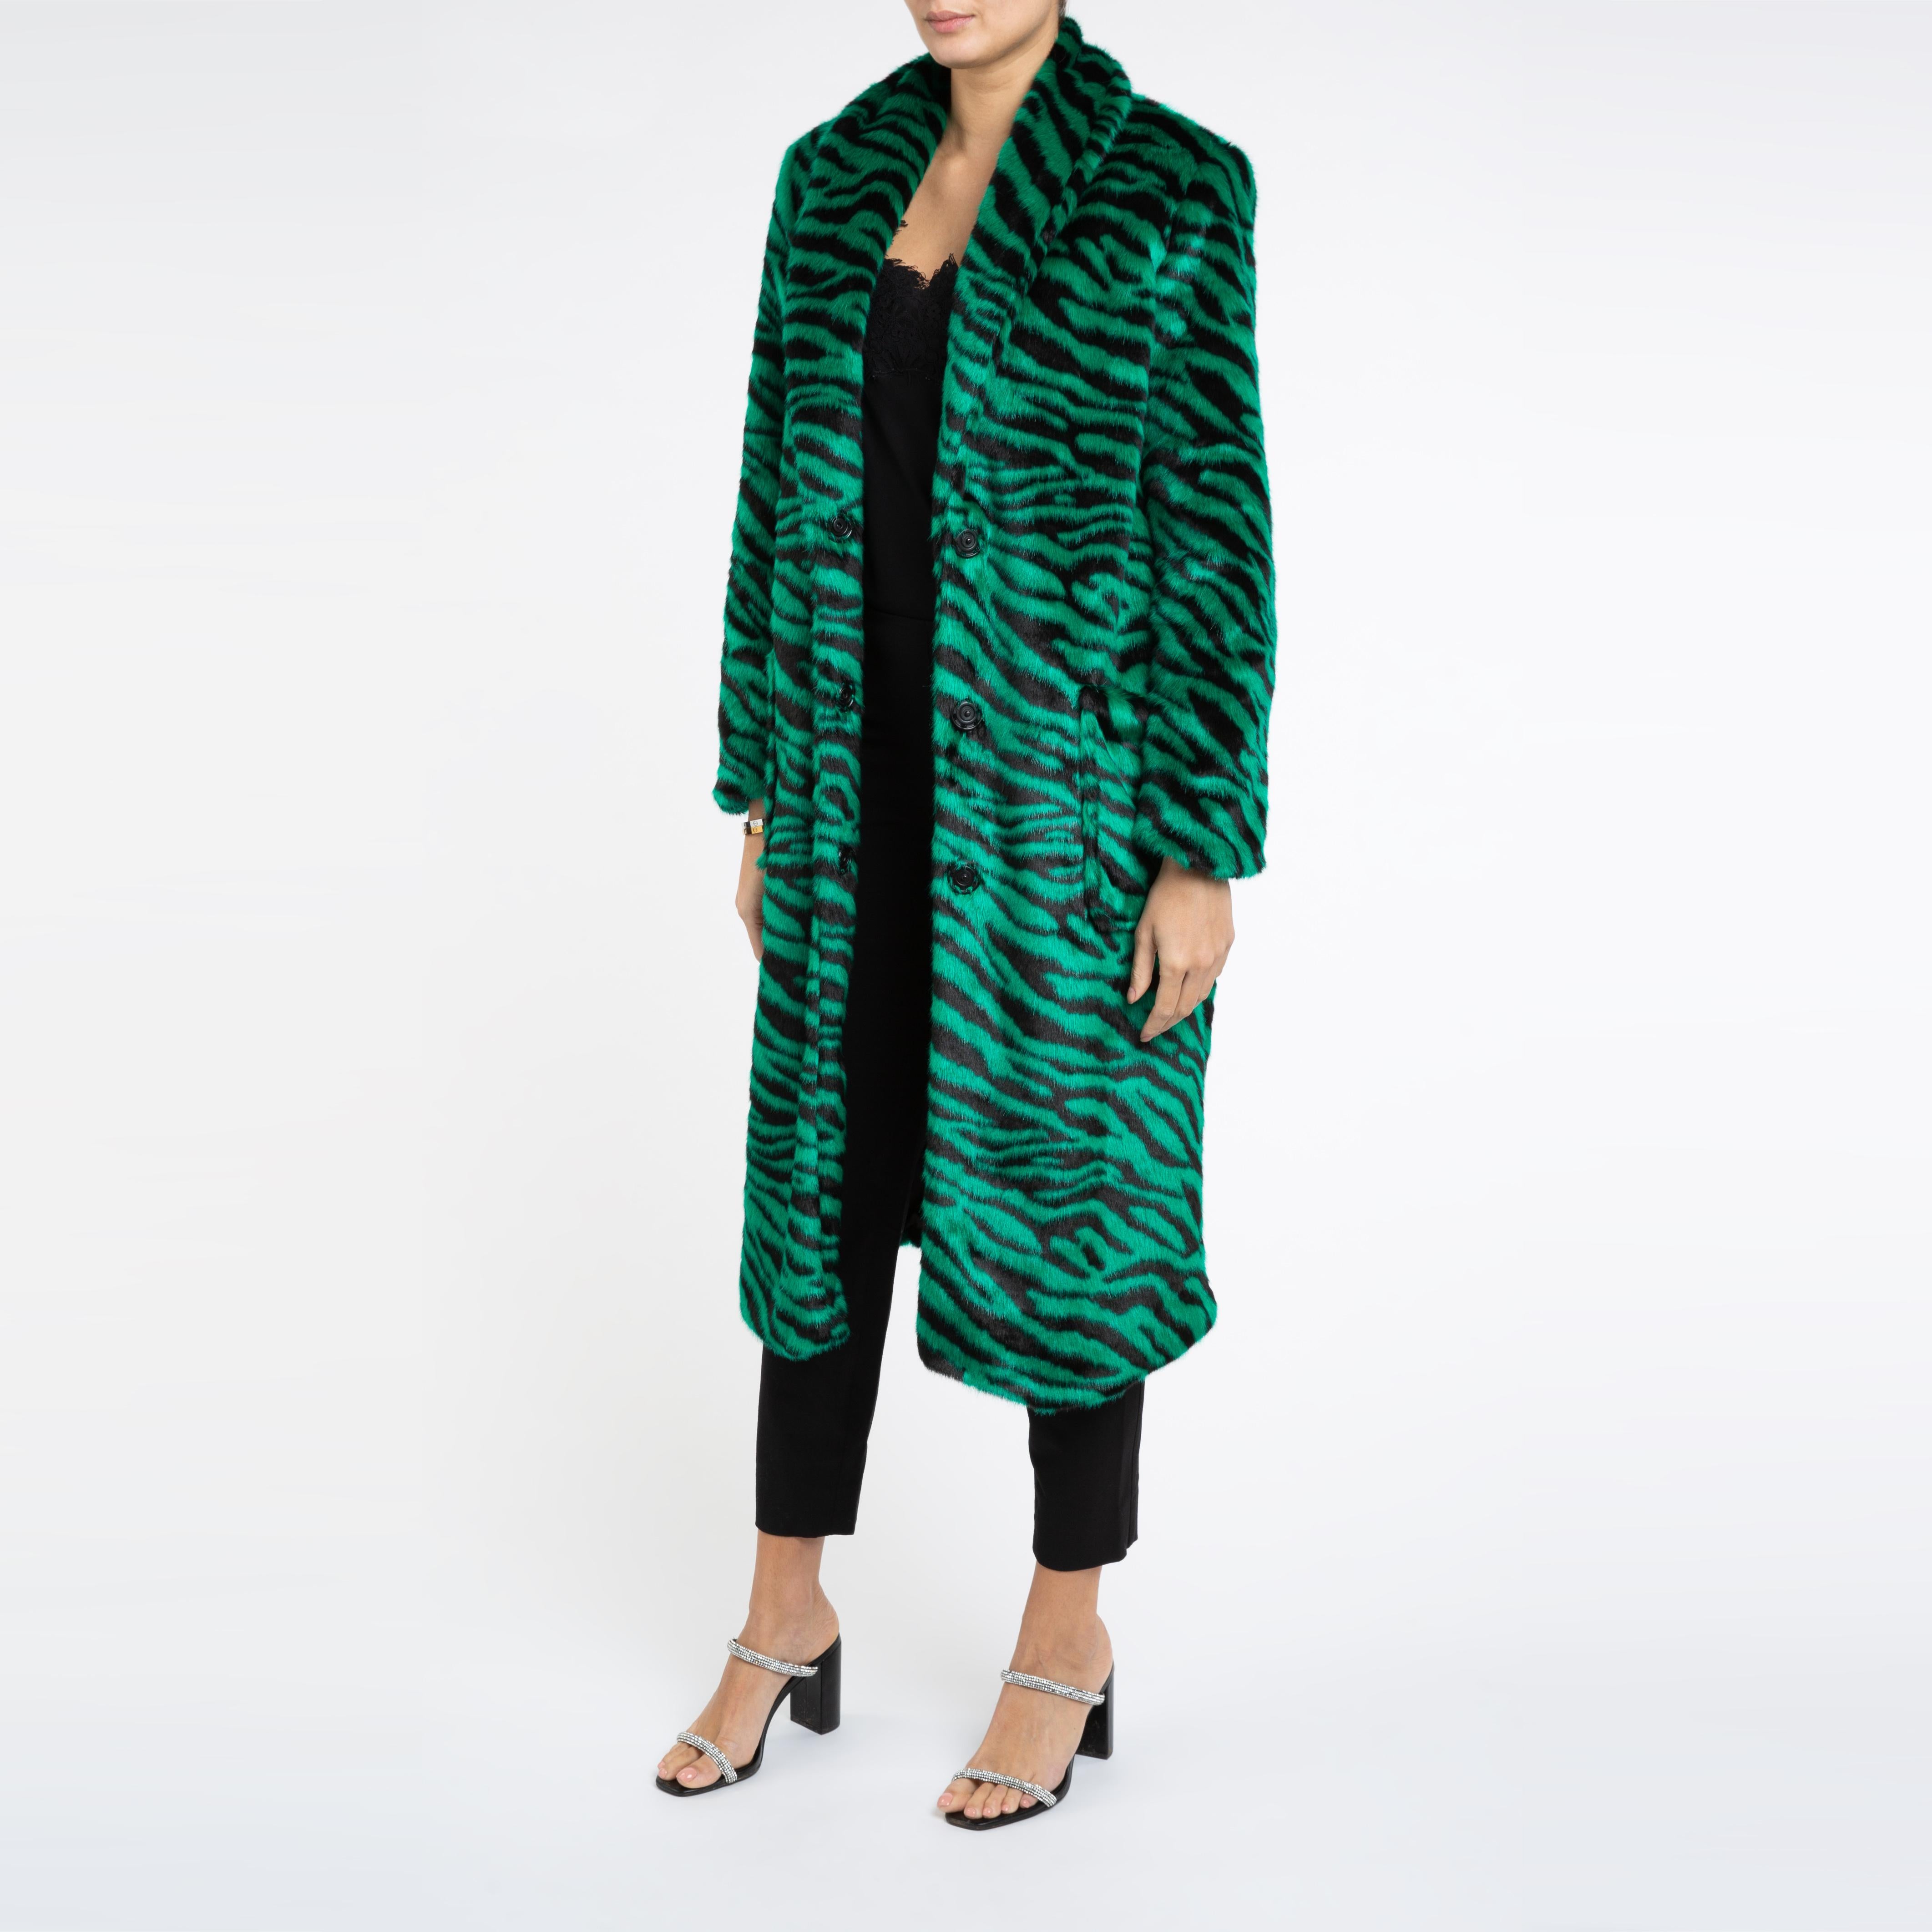 Verheyen London Esmeralda Faux Fur Coat in Emerald Green Zebra Print size uk 10 For Sale 2